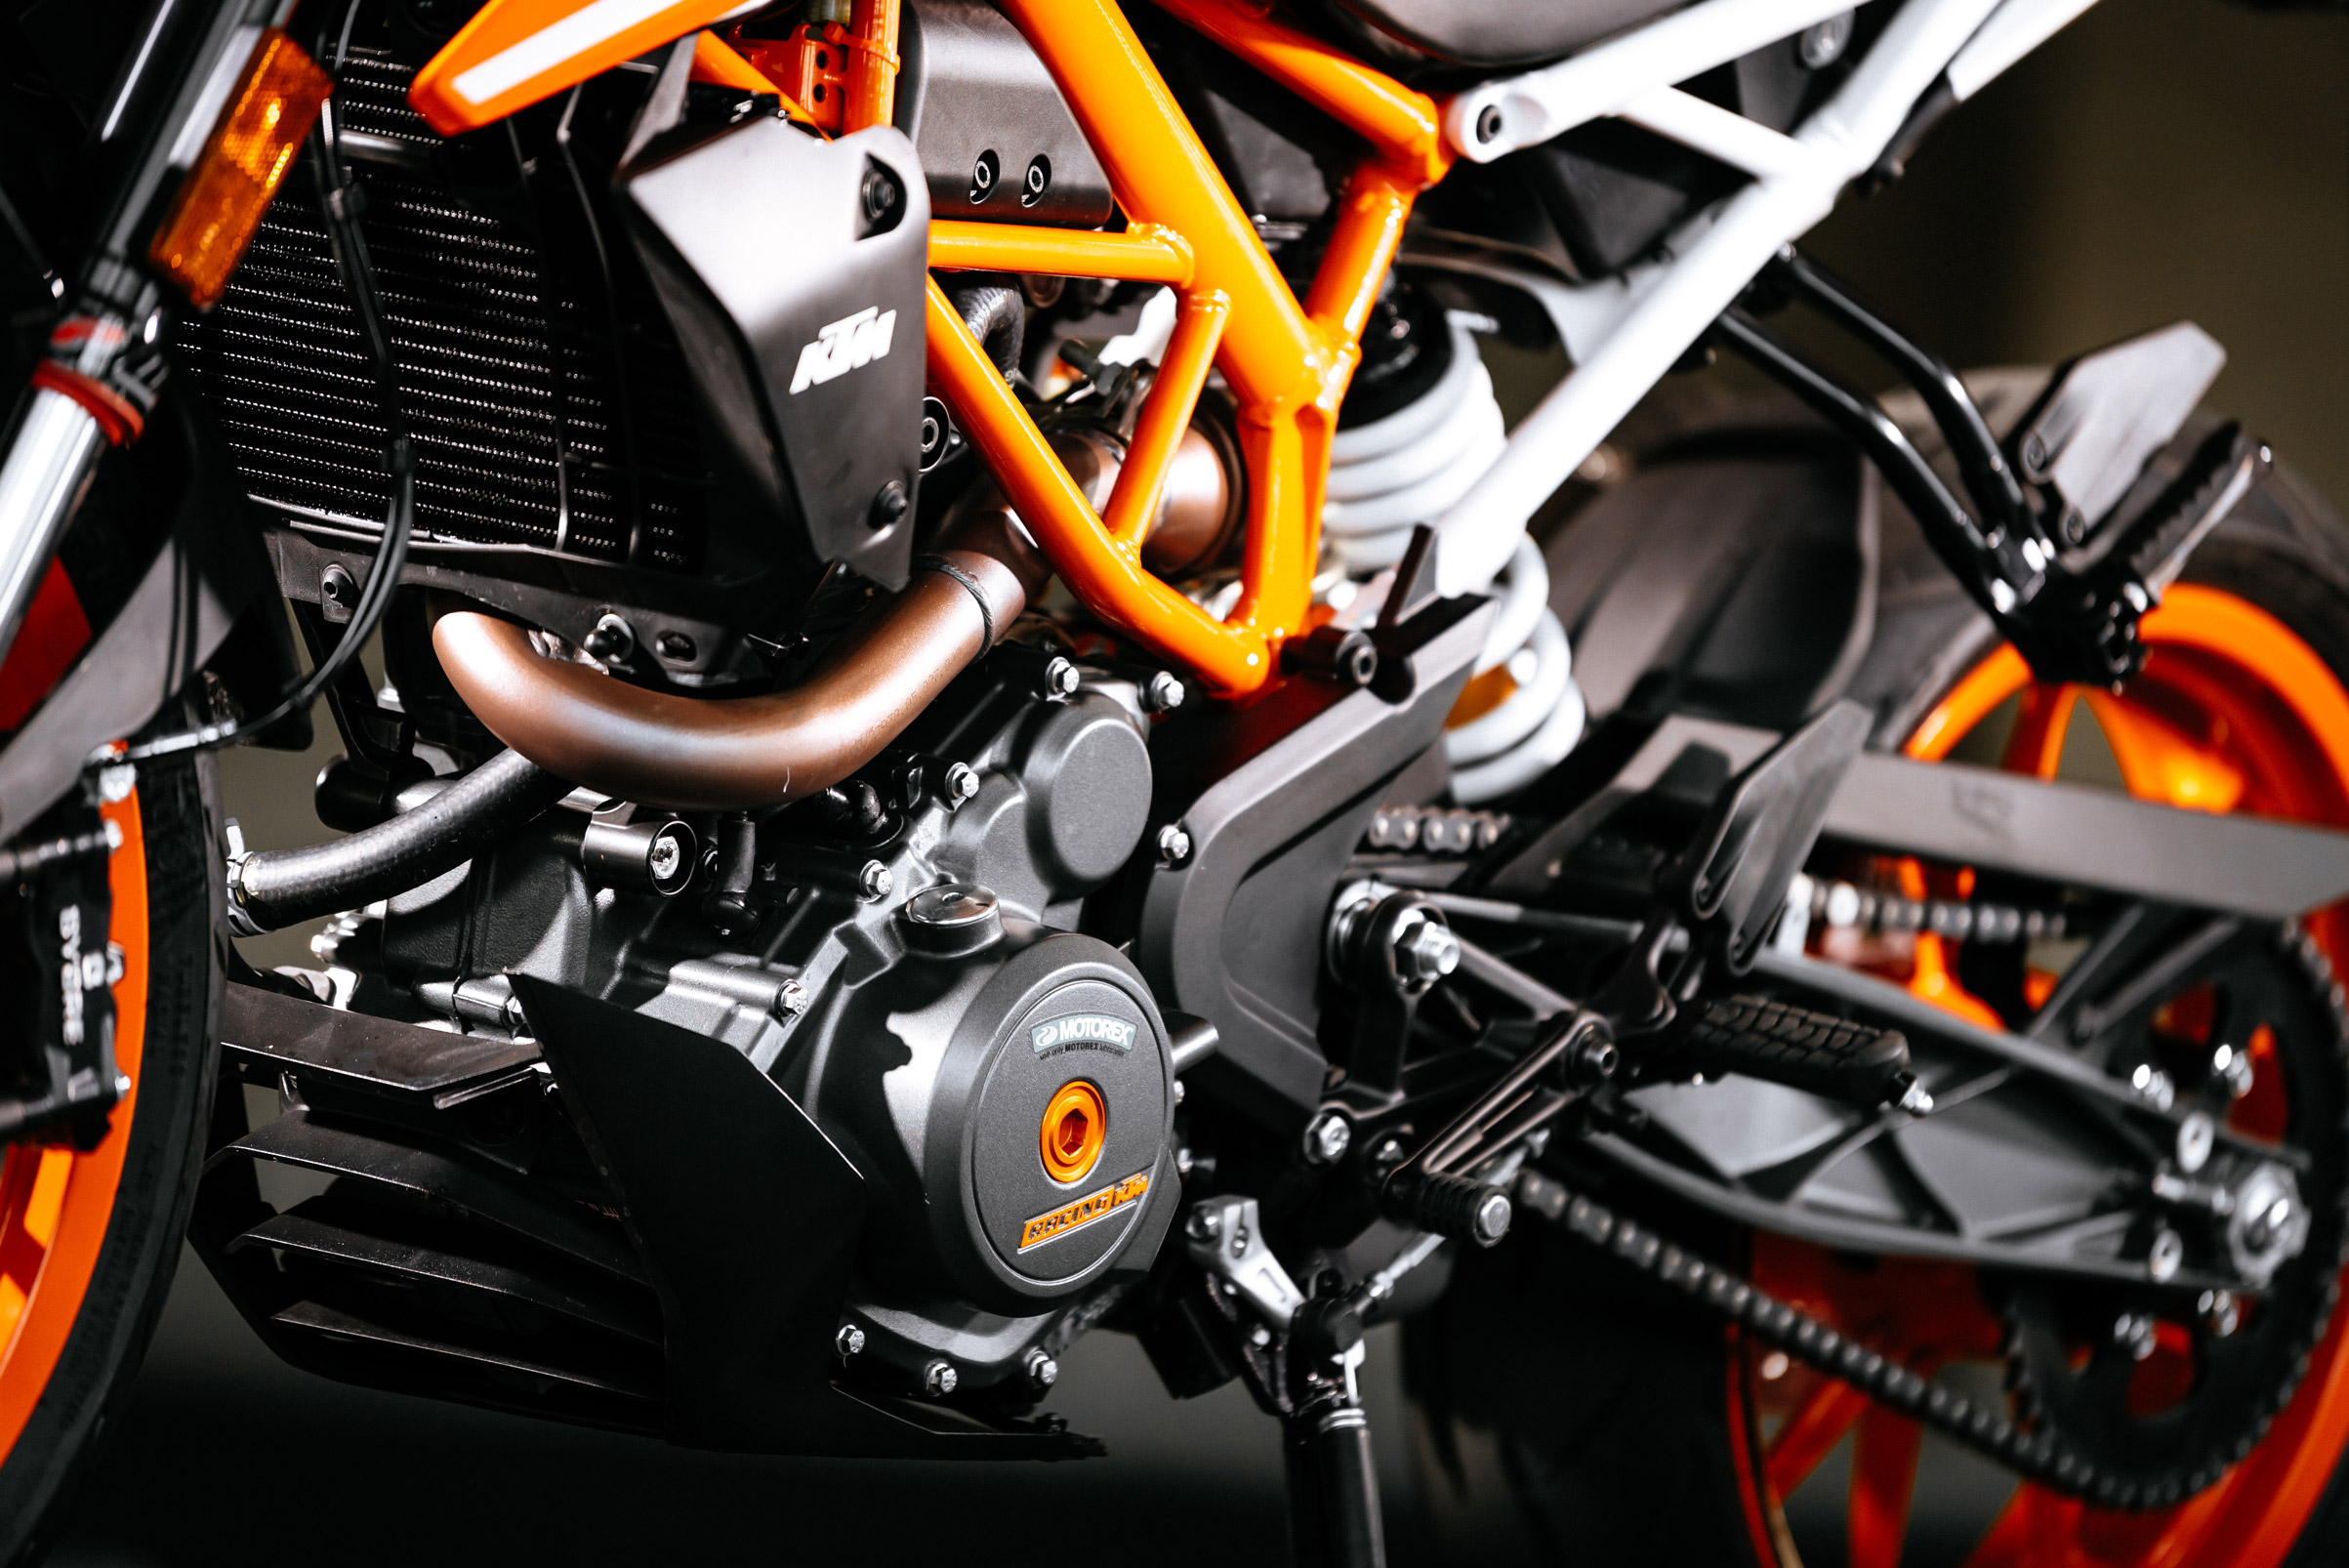 KTM Duke engine